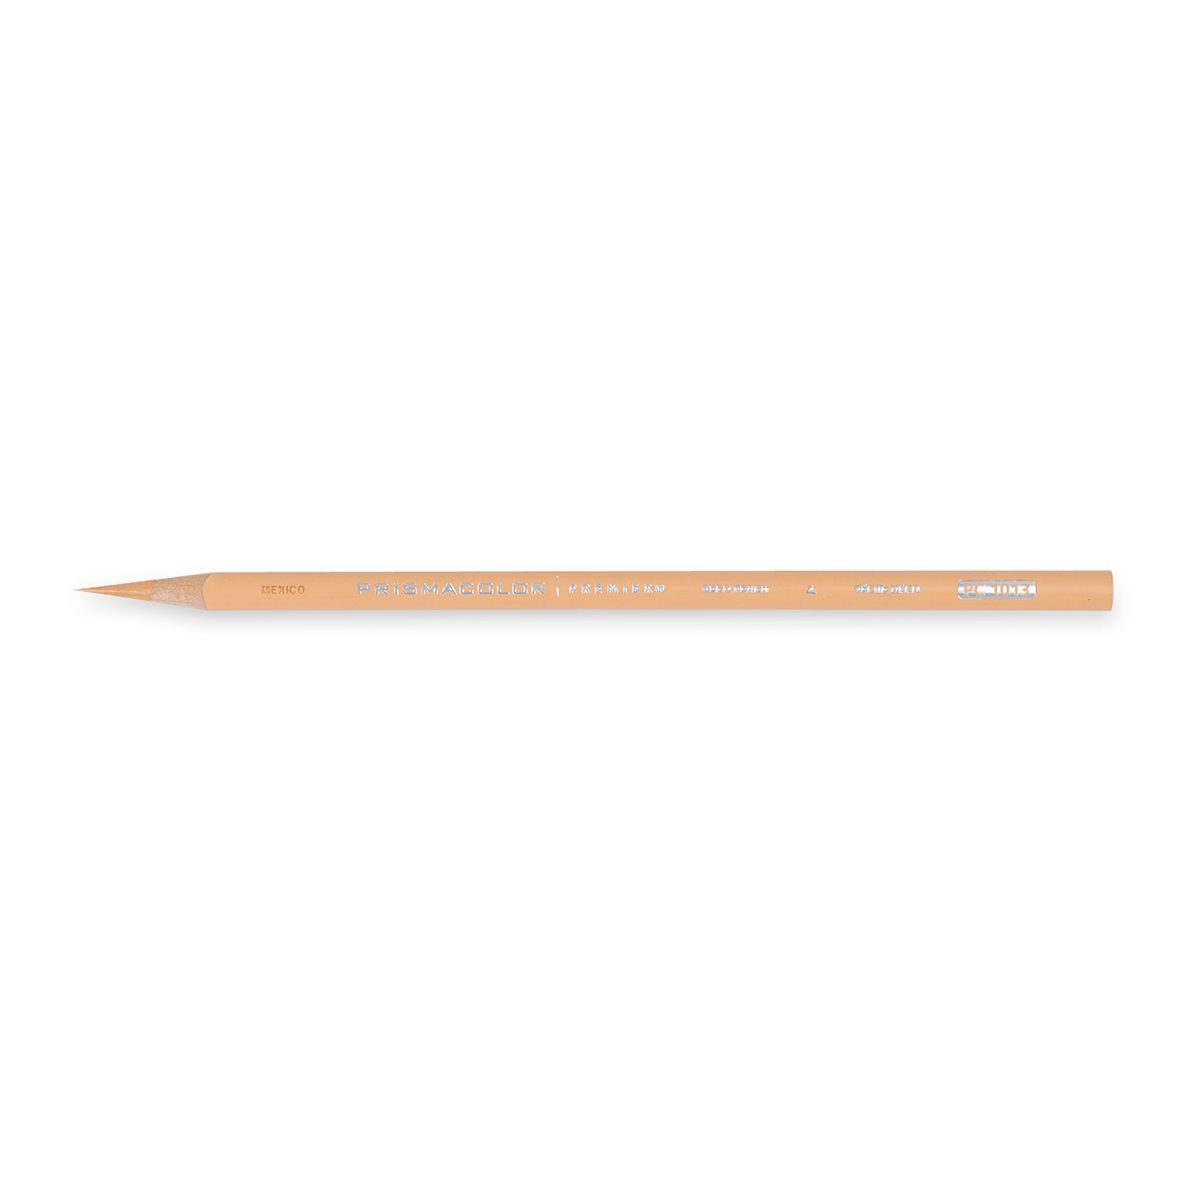 Prisma Premier Colored Pencils - Felt Paper Scissors